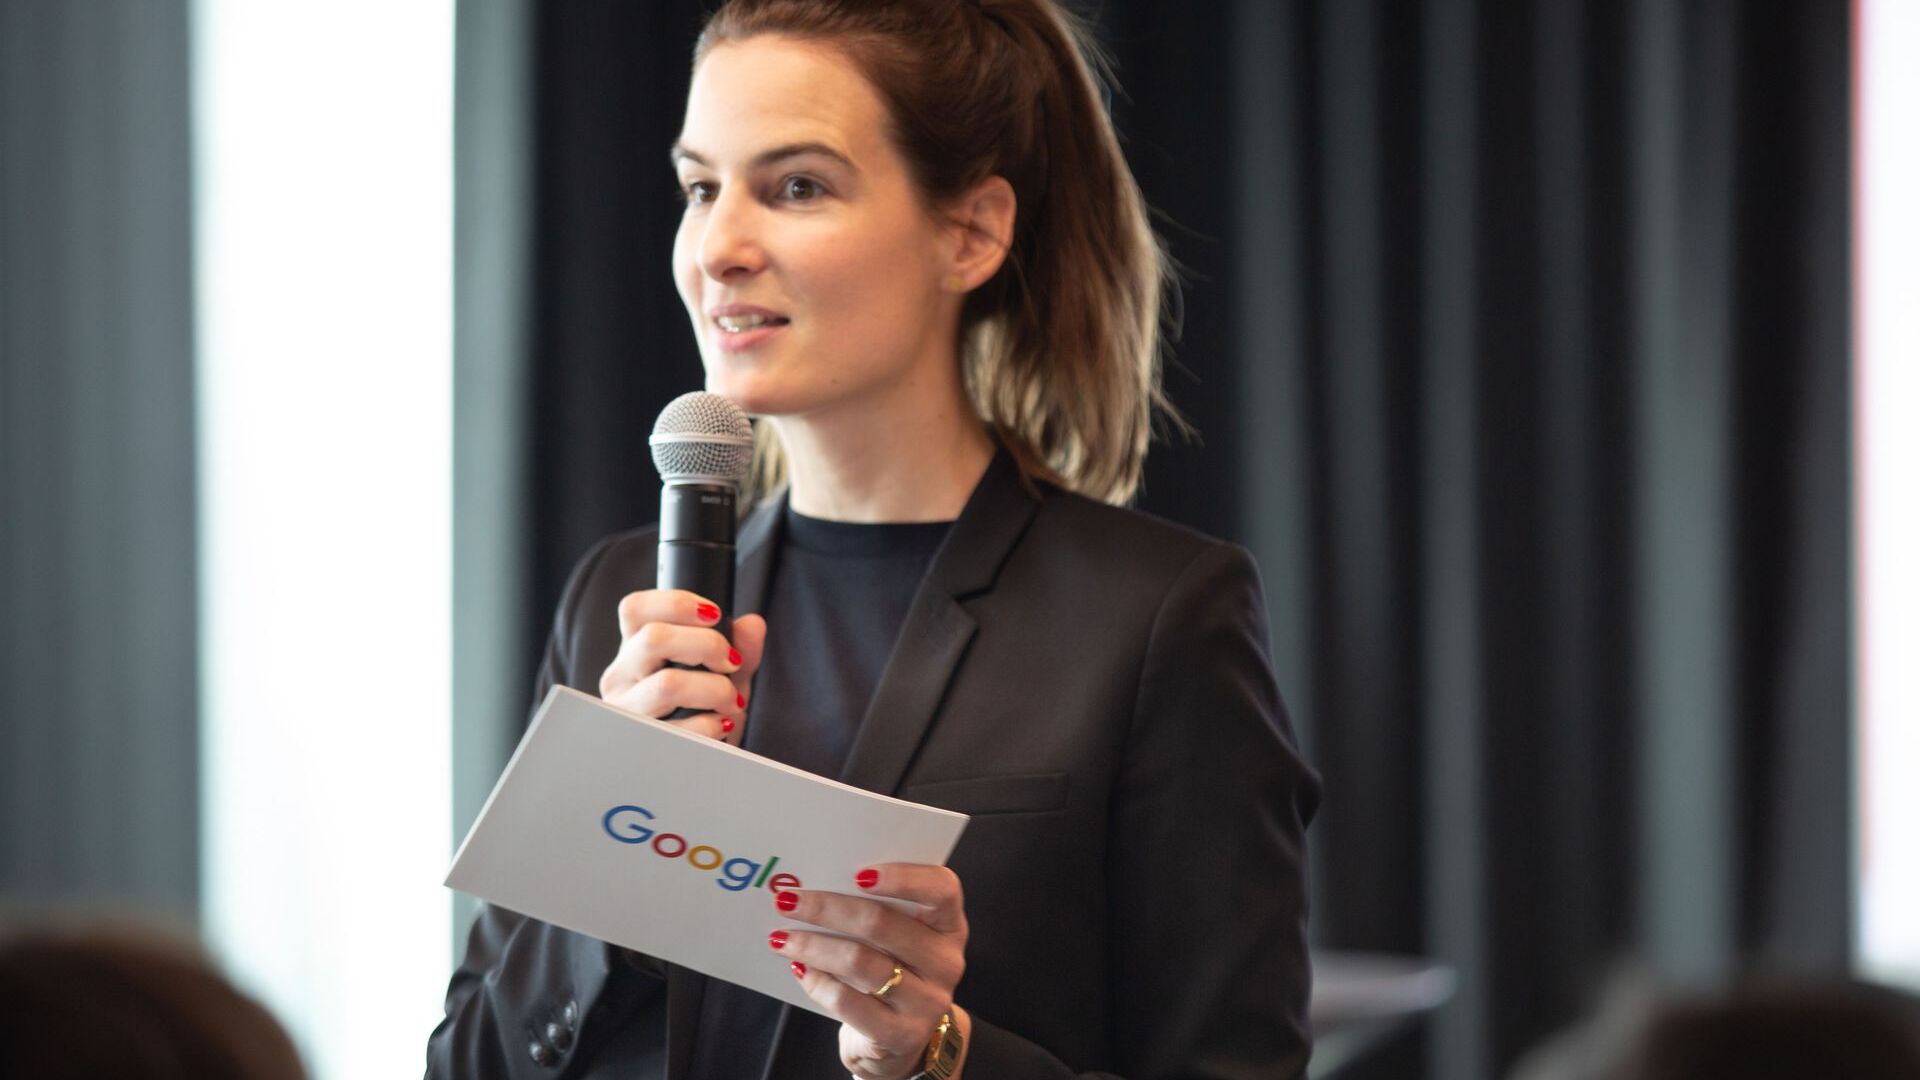 Pia De Carli, zespół medialny Google Switzerland, wzięła udział w oficjalnej inauguracji nowego kampusu Europaallee Google w Zurychu 27 czerwca 2022 r.